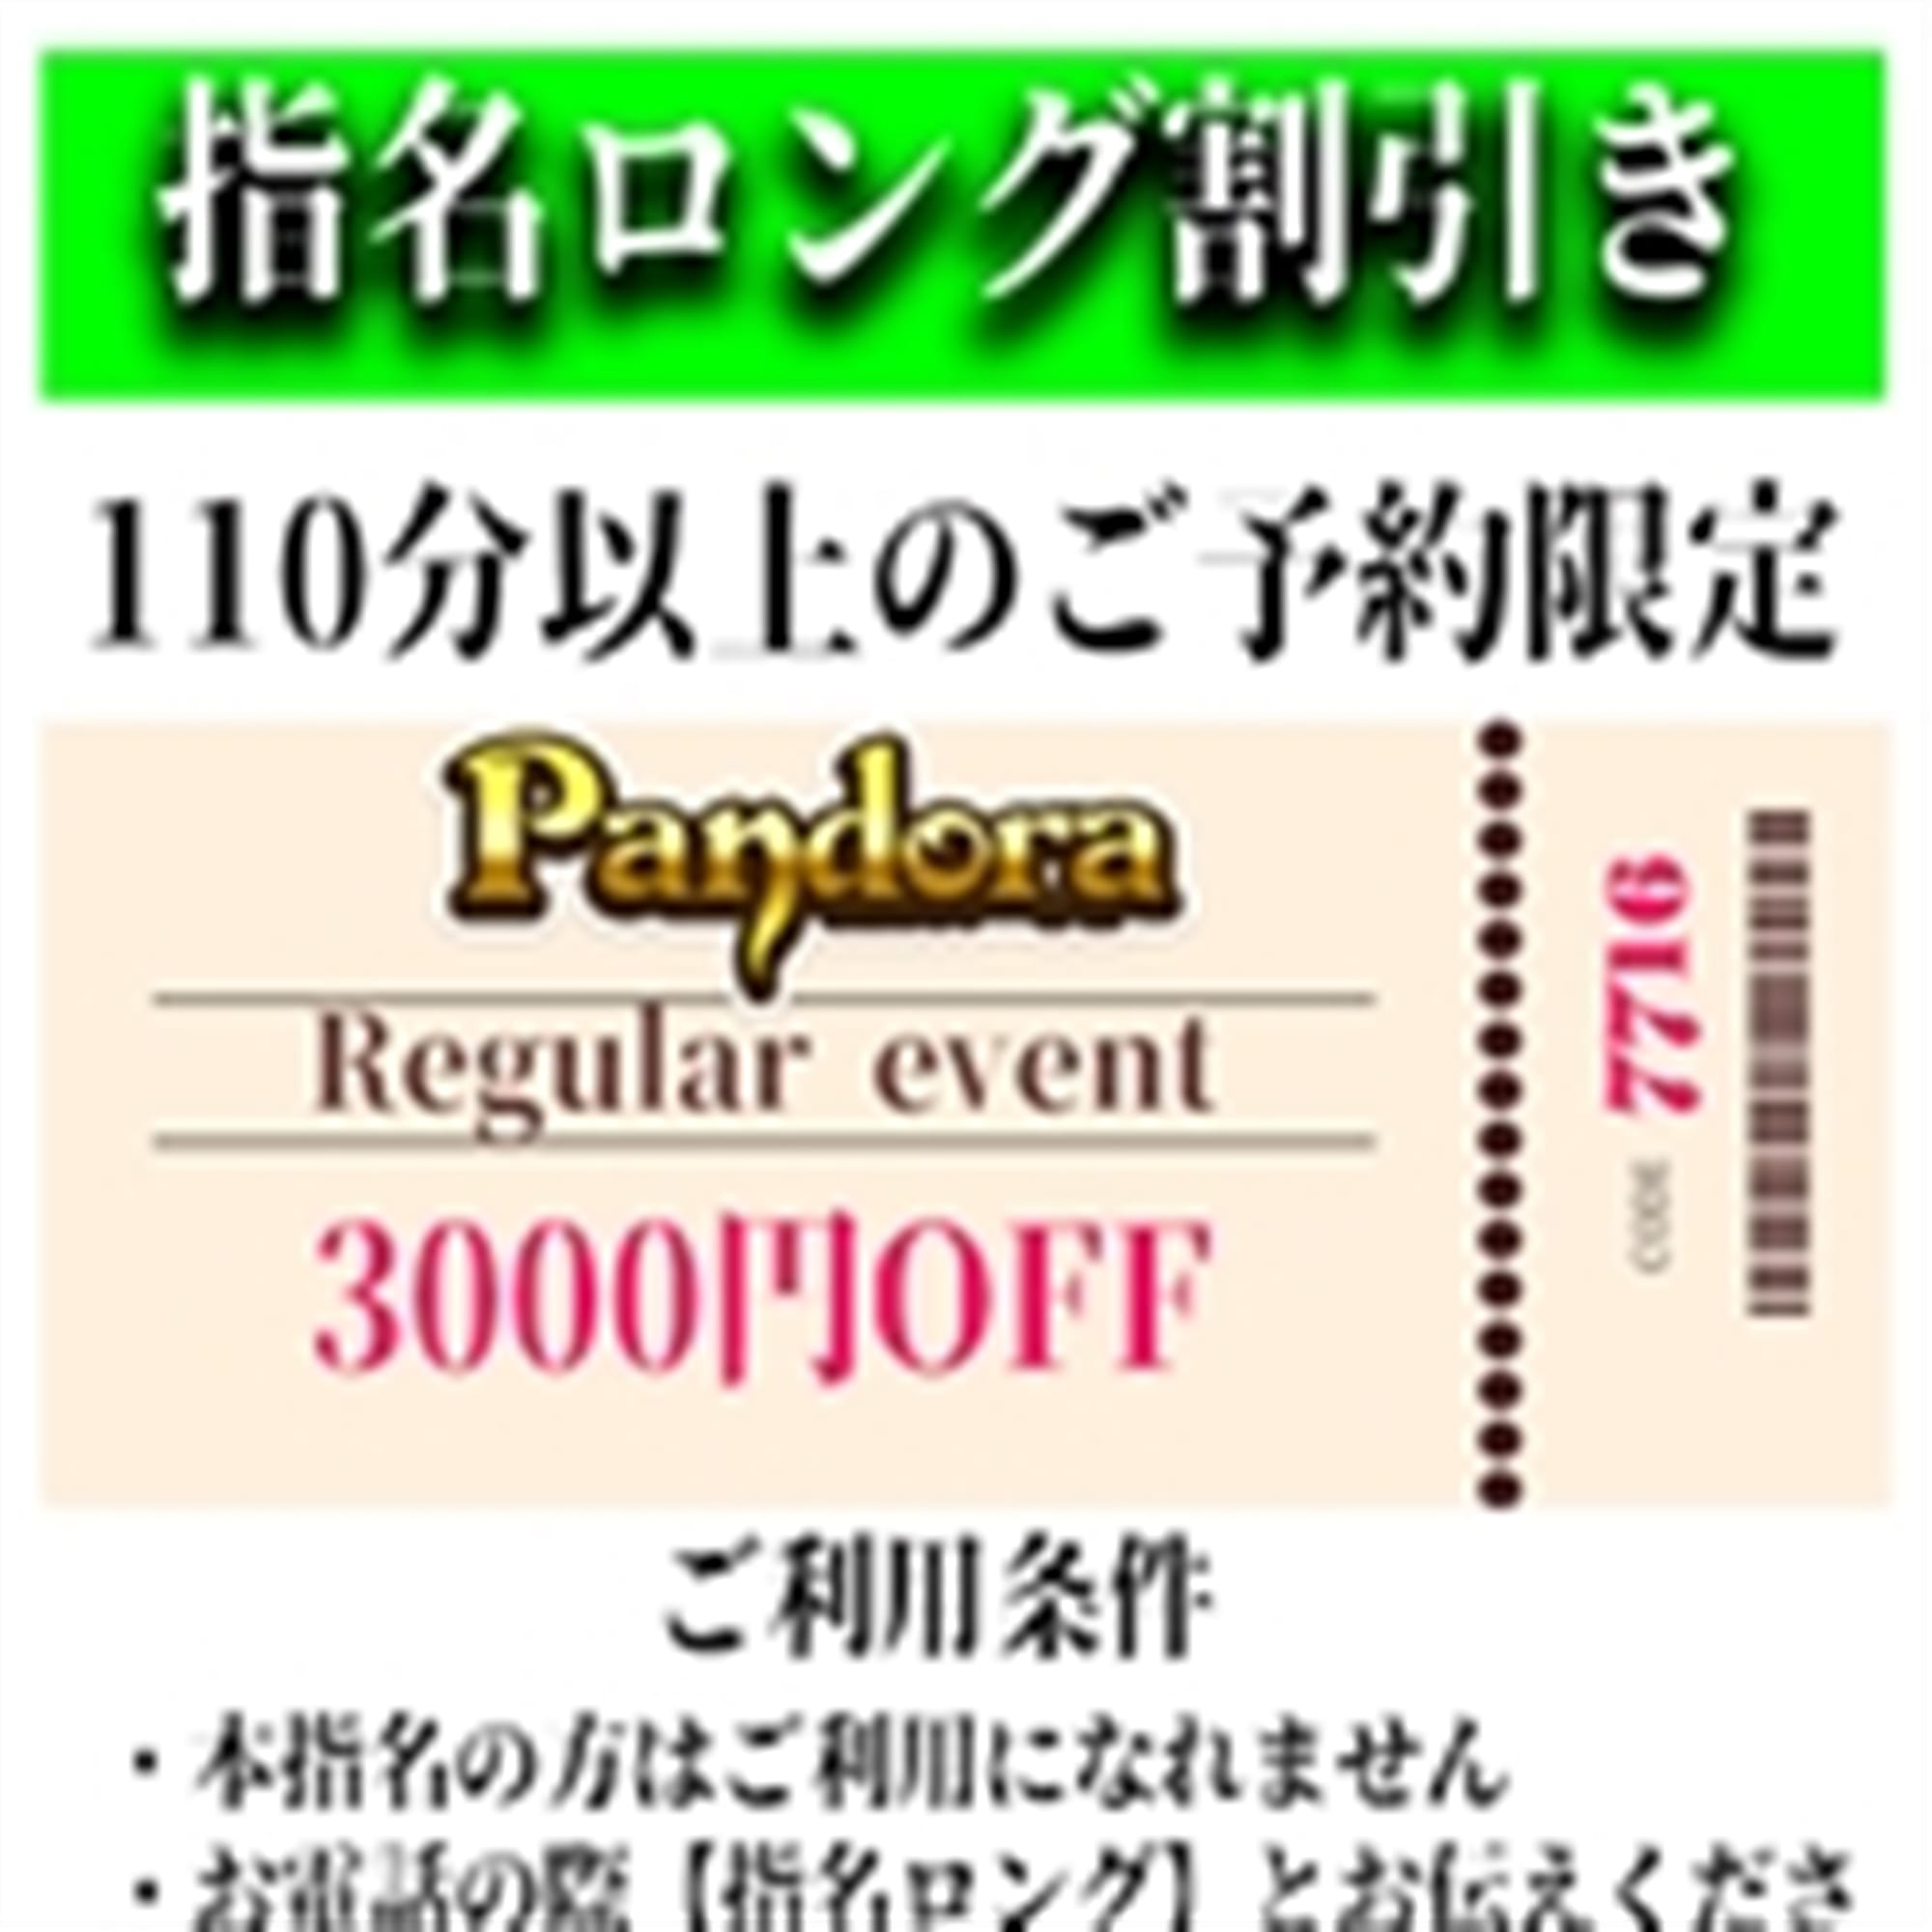 「ご指名のお客様も遊べるロングコース割引」04/19(金) 21:43 | Pandora(パンドラ)新潟のお得なニュース